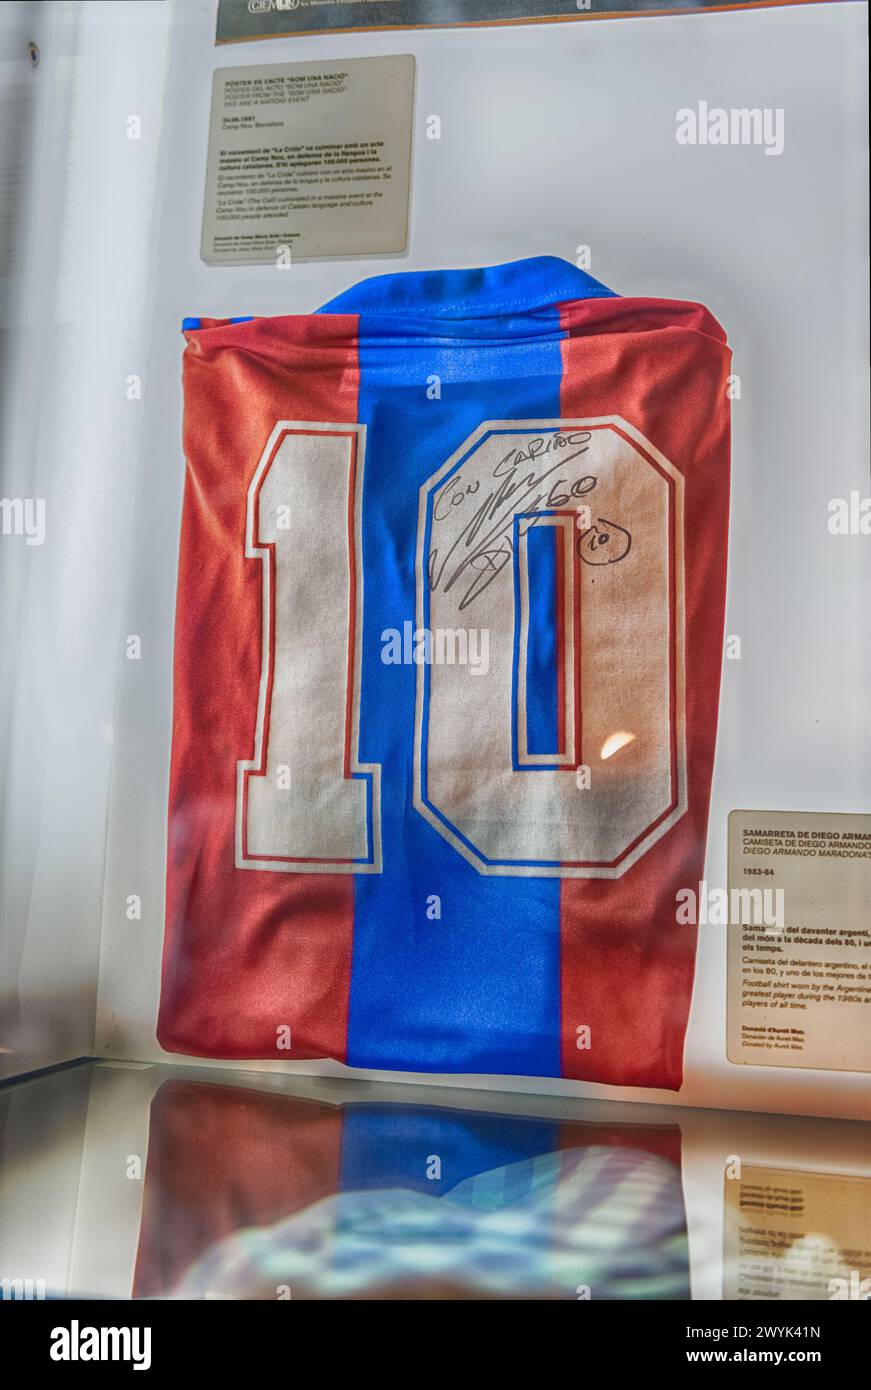 BARCELONE - 11 AOÛT : Maillot de football Diego Armando Maradona au Musée Camp Nou, Barcelone, Catalogne, Espagne, le 11 août, 2017. le musée attra Banque D'Images